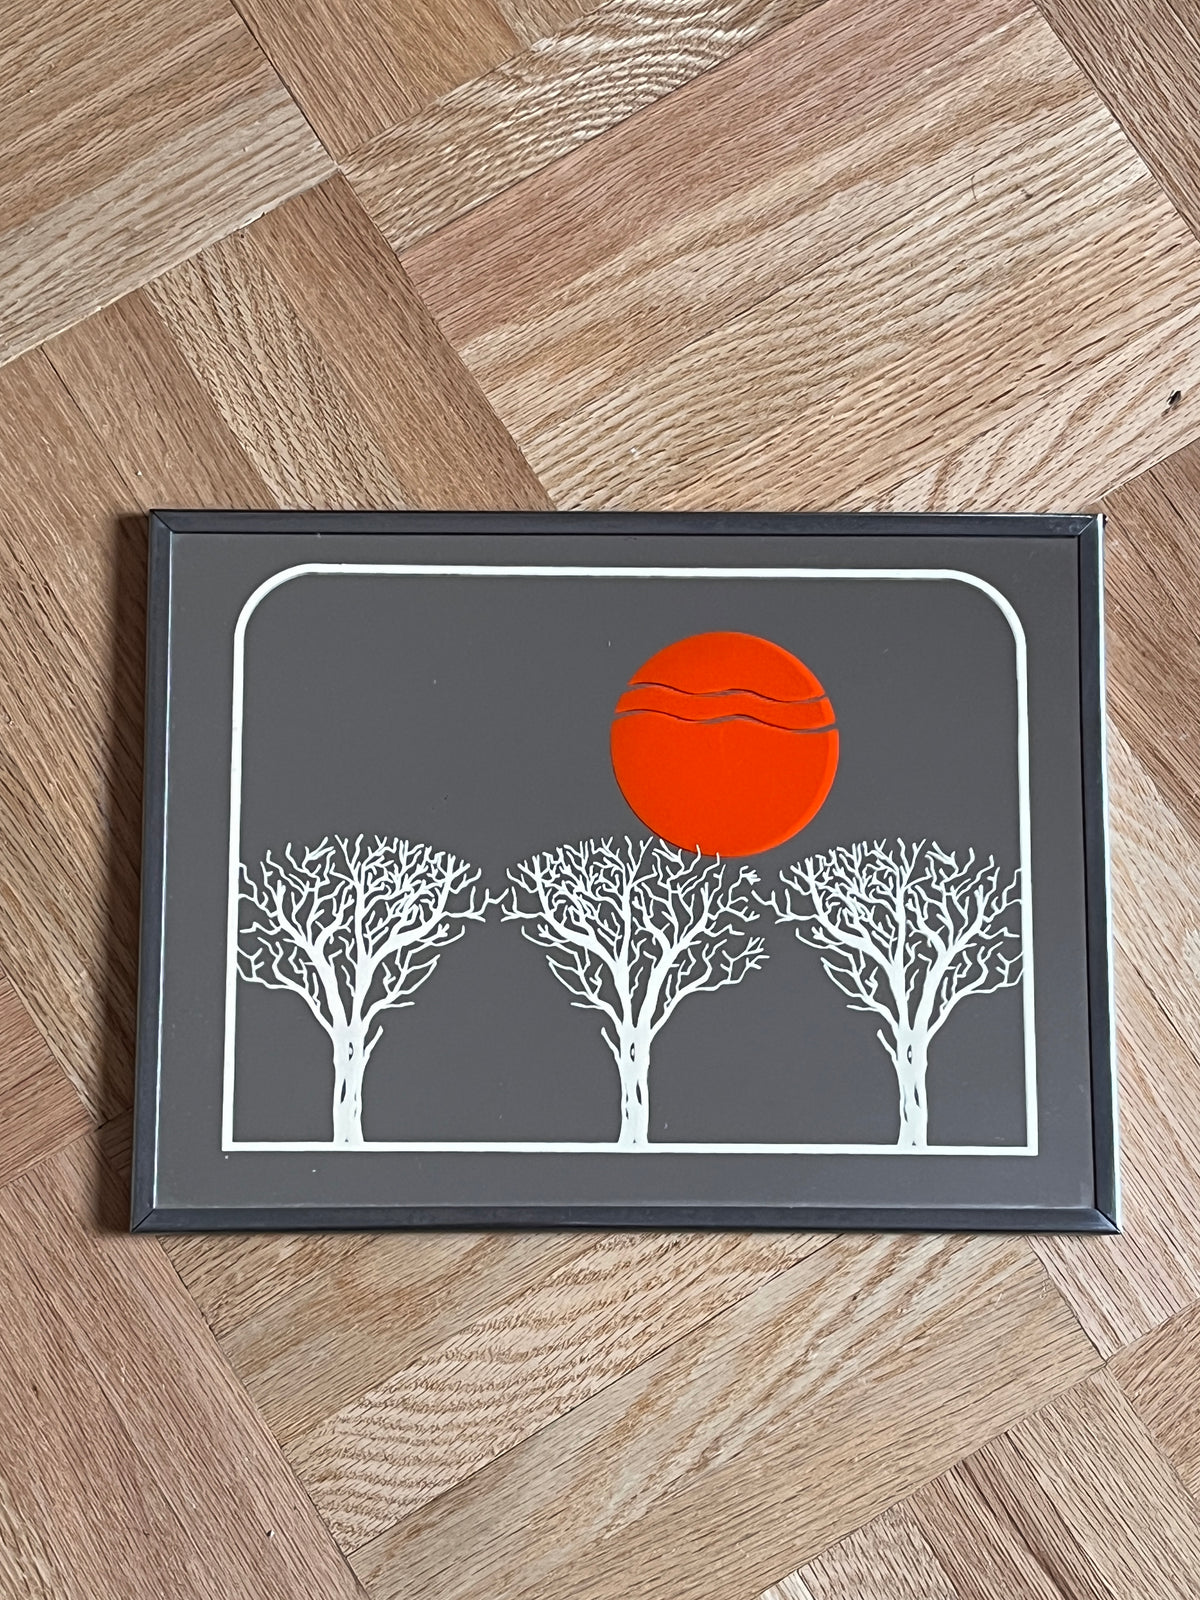 1970s Framed Art Mirror - Orange Sun / Trees